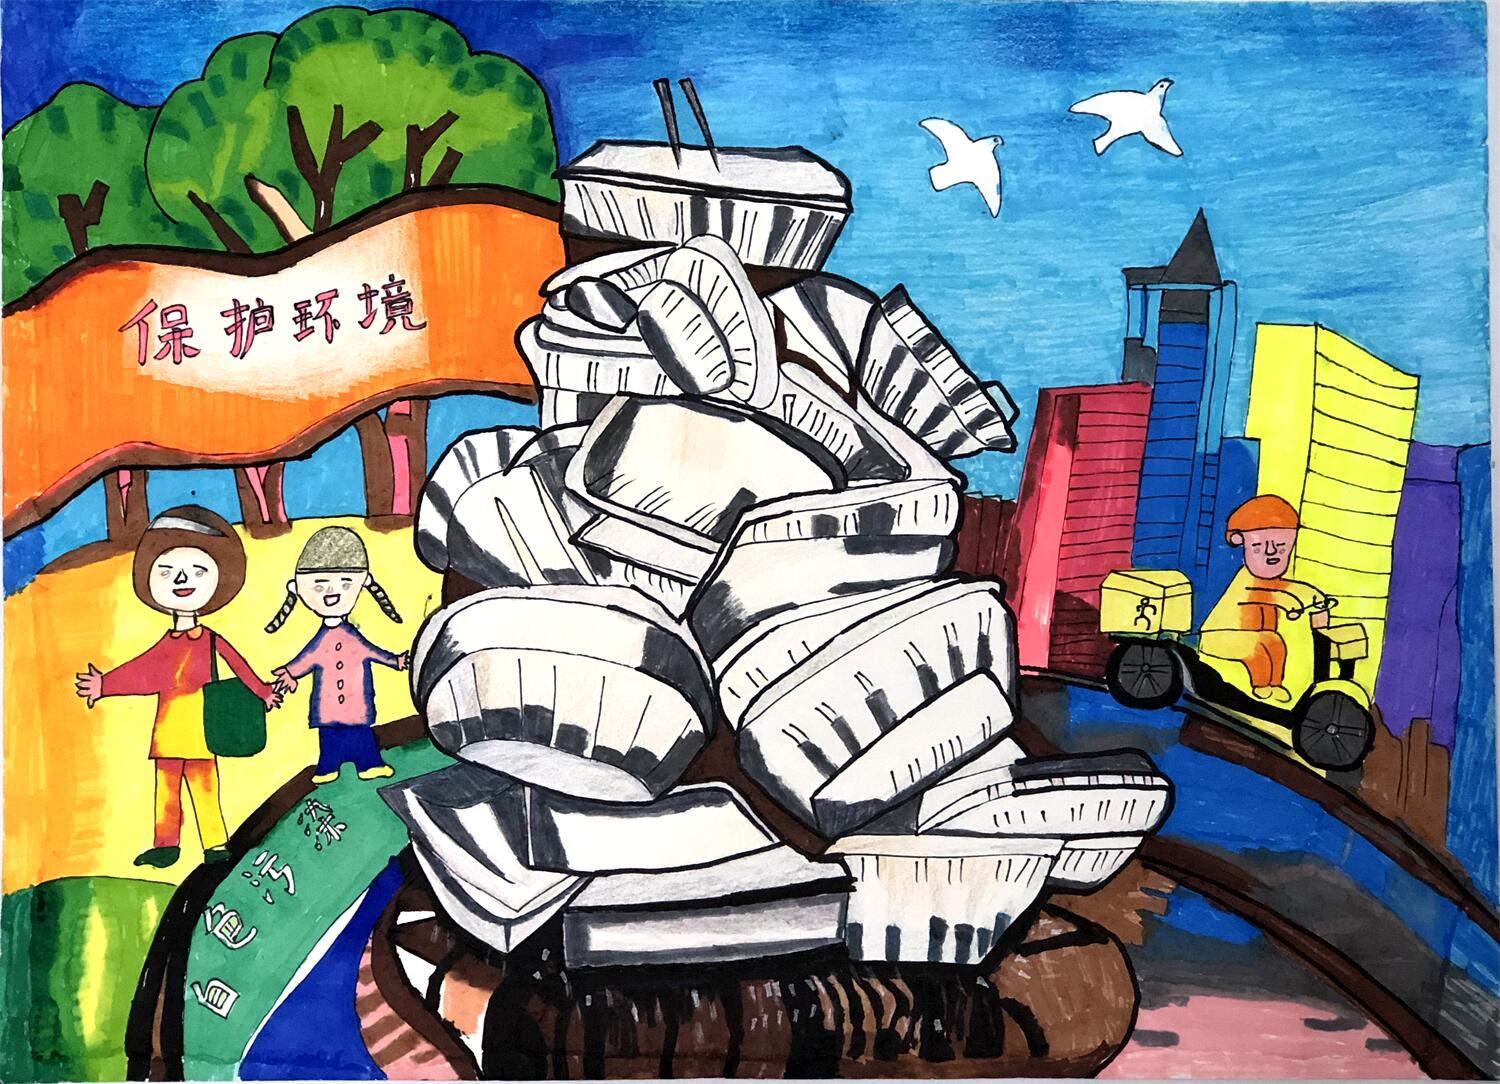 彩云杯中小学生绘画比赛·小学组三等奖获奖作品展示(3)